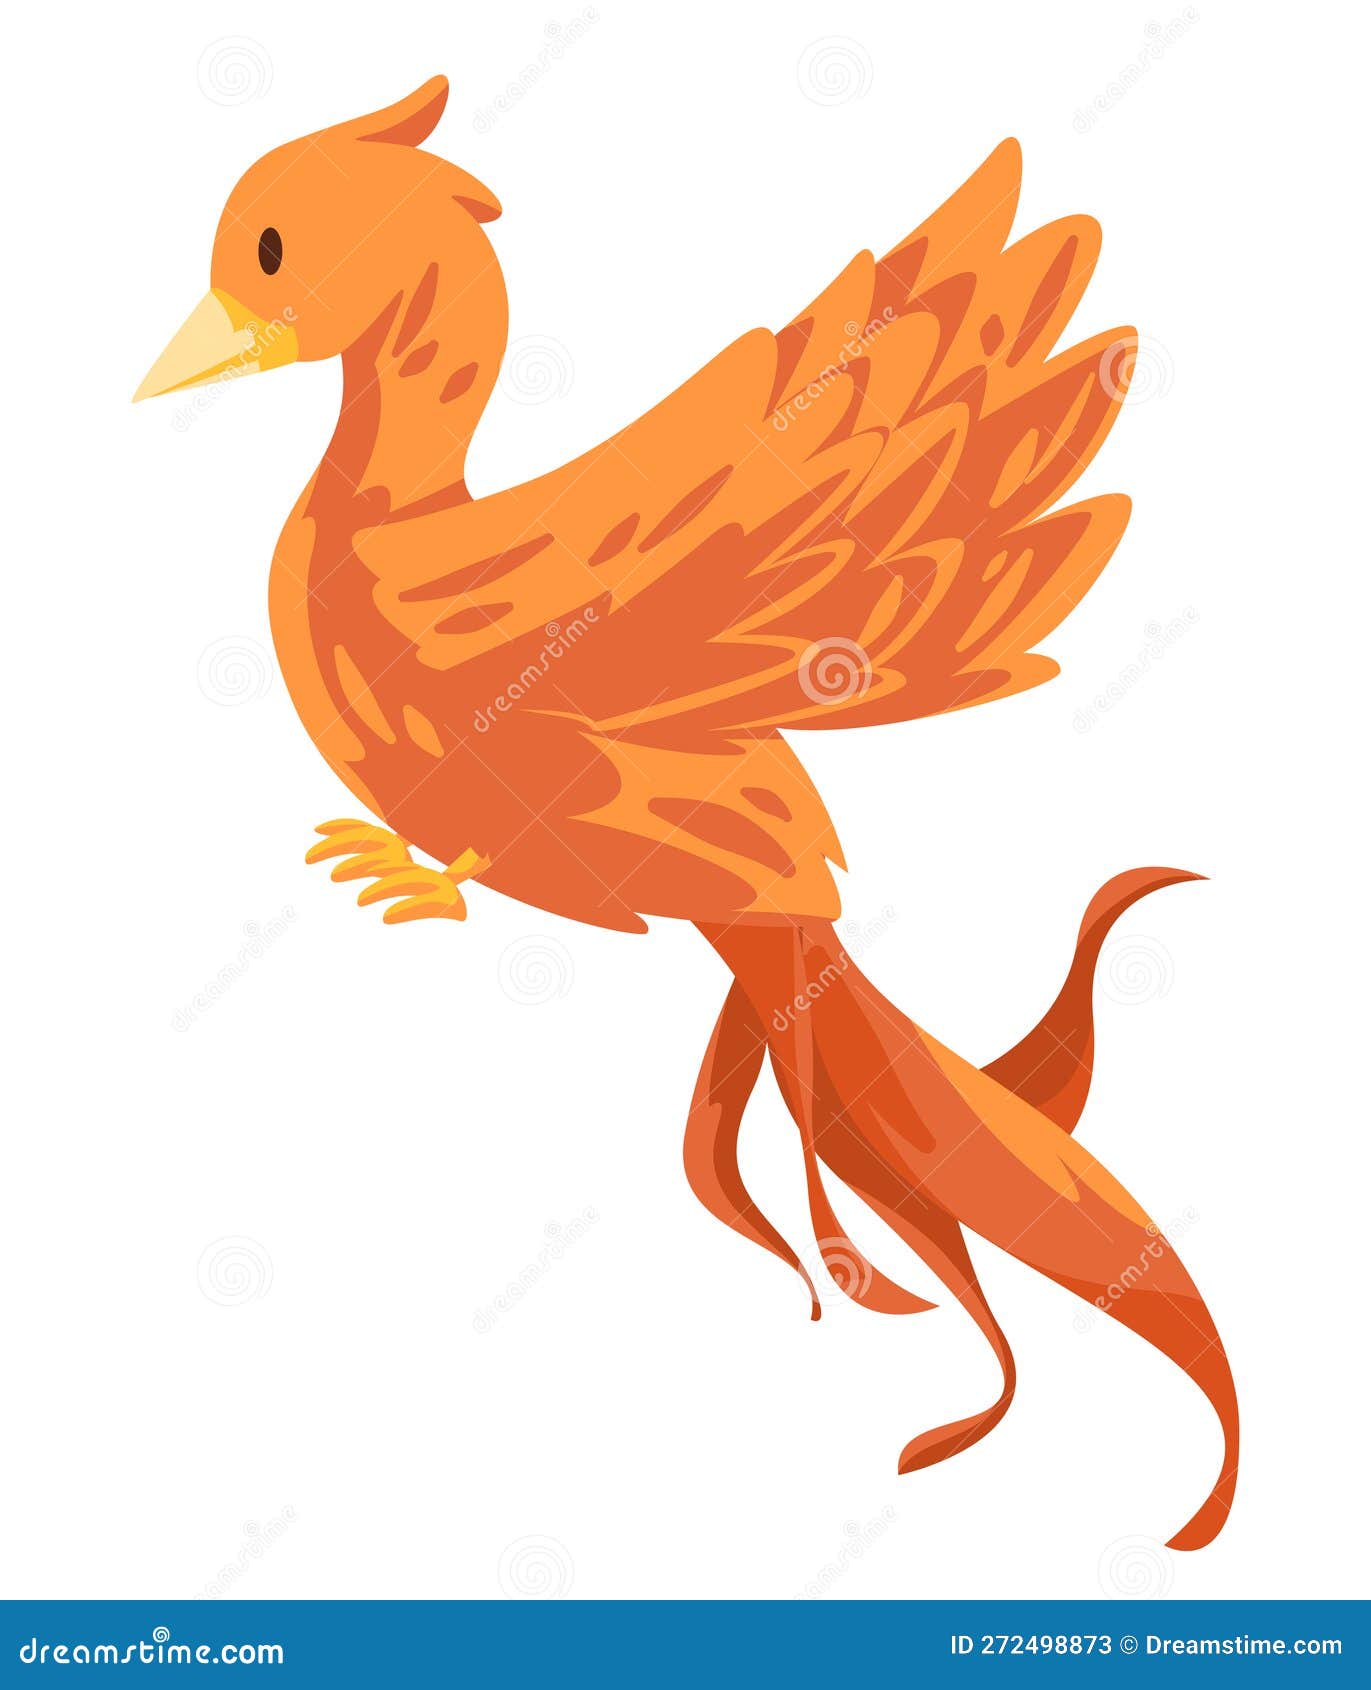 Phoenix, Mythological Long-lived Bird Royalty-Free Stock Photo ...